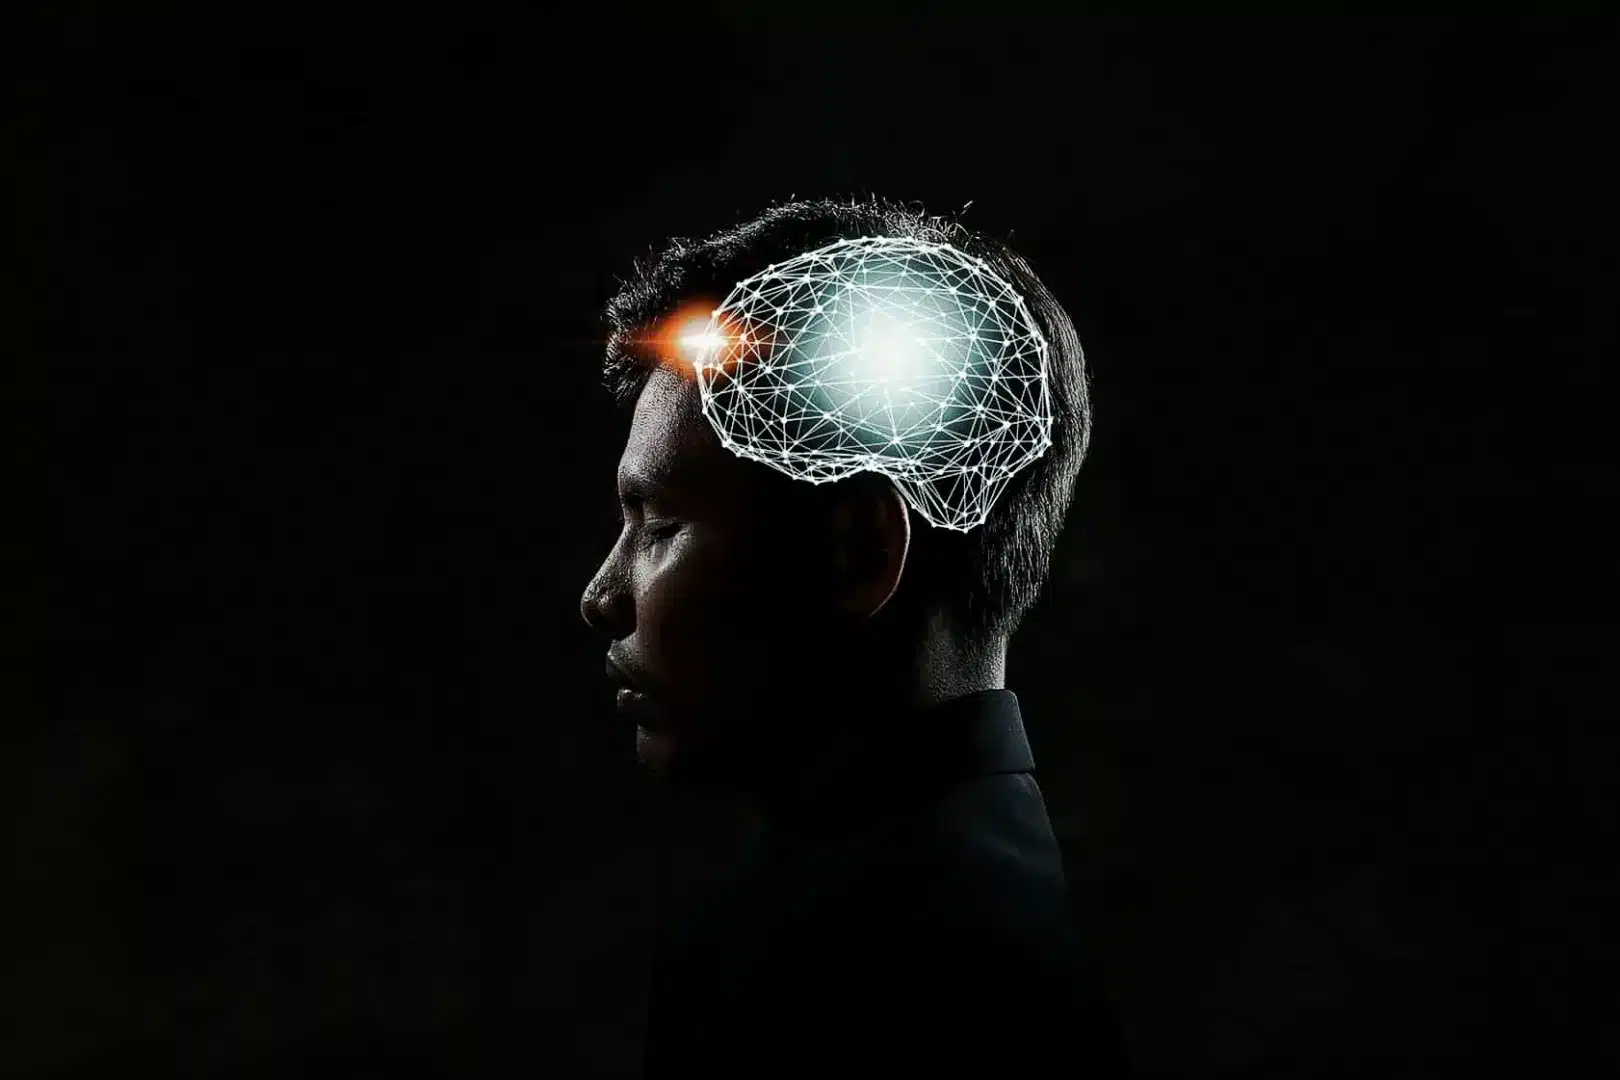 Manne vor schwarzem Hintergrund. Am Kopf ist eine Grafik eines vernetzten Gehirns abgebildet.